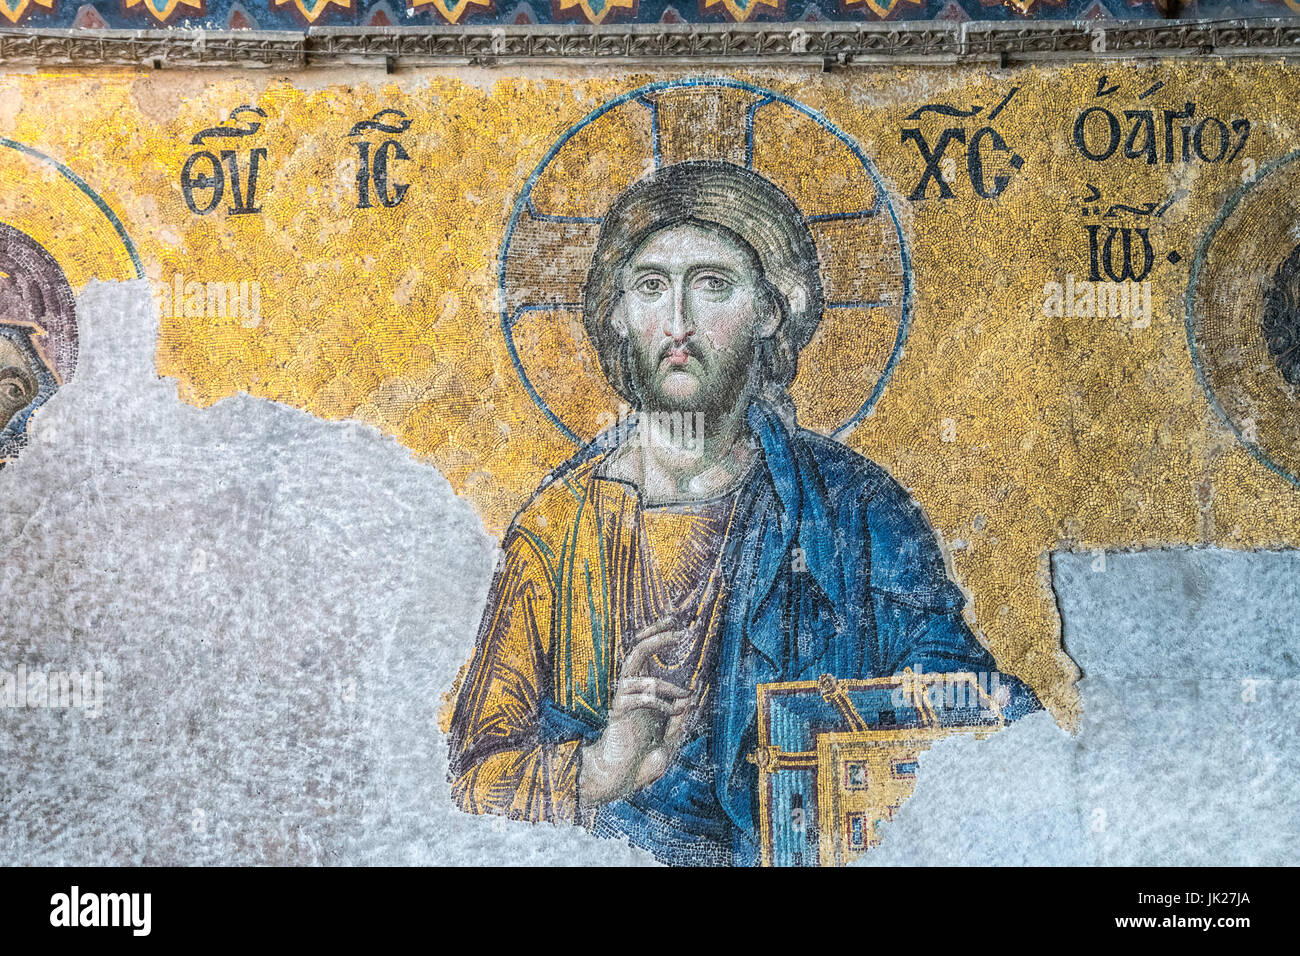 Close up detail de l'Deësis mosaic, qui dispose le Christ dans la prière et portant un livre, situé dans la galerie supérieure de la basilique Sainte-Sophie dans Istanbu Banque D'Images